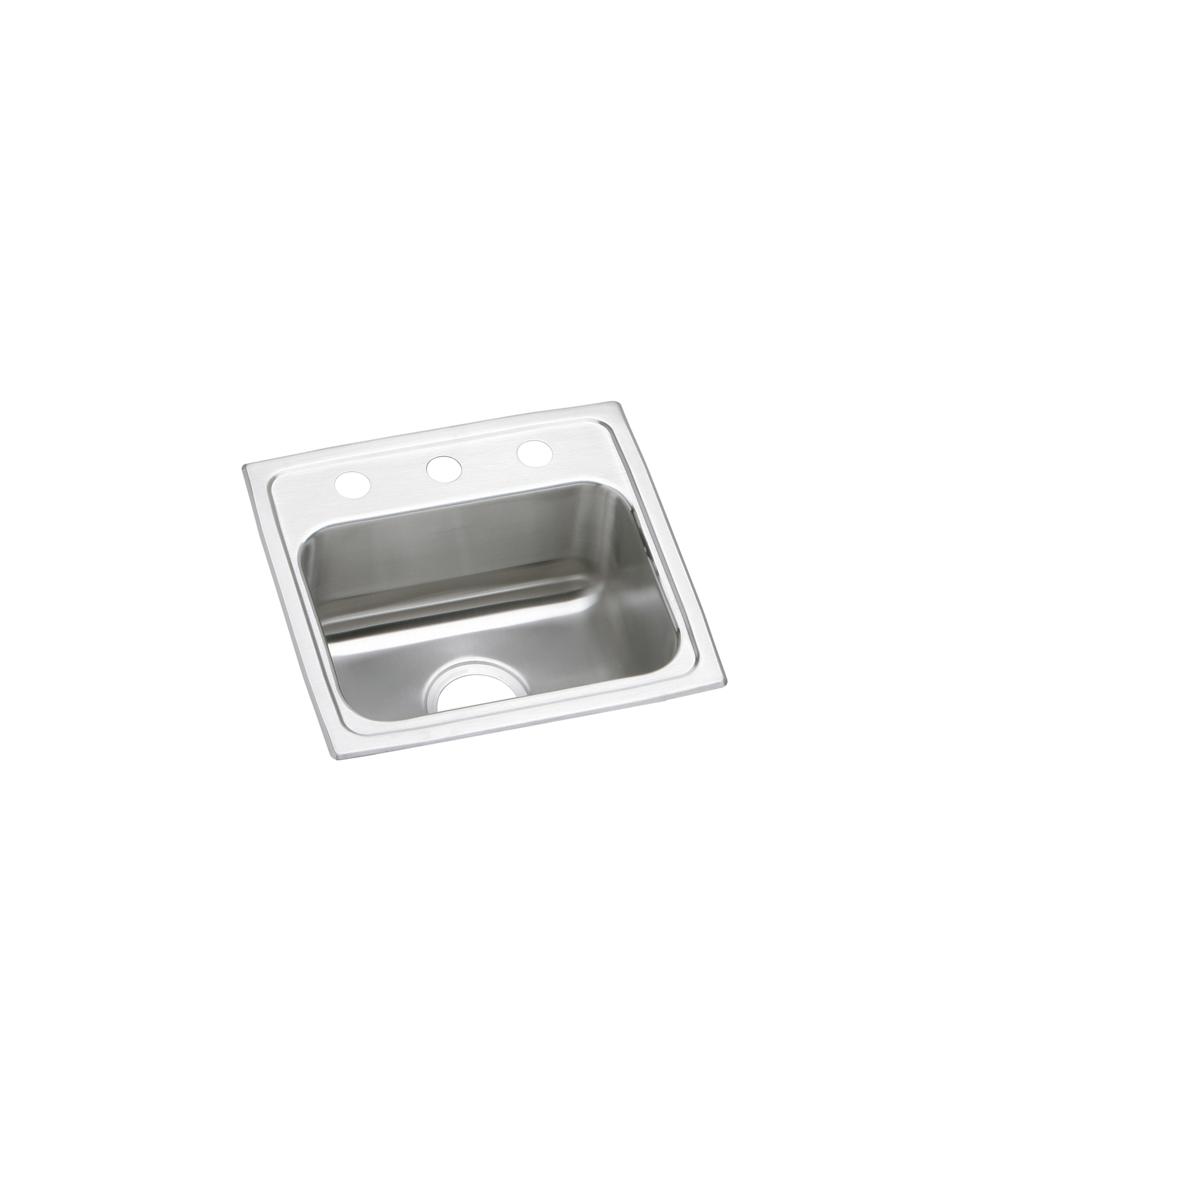 Elkay Stainless Steel Single Bowl Drop-in Sink 1702253